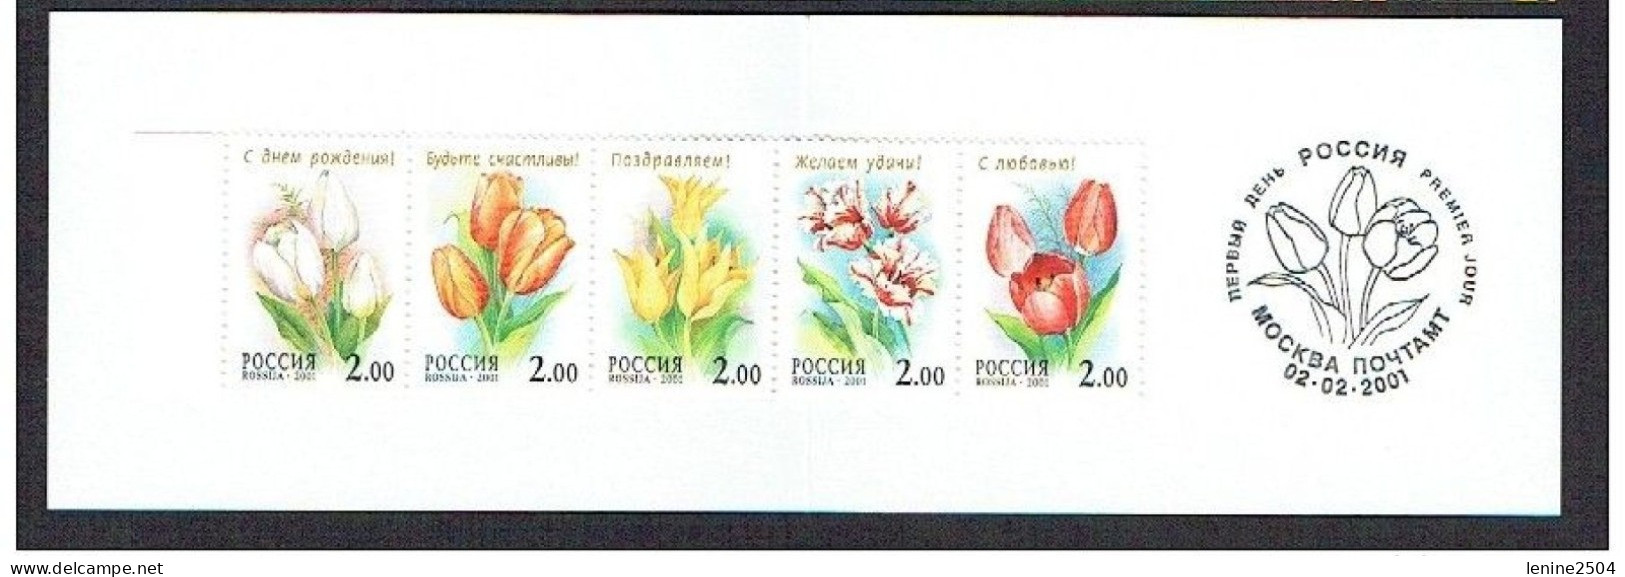 Russie 2001 N° 6546-6550 ** Tulipes Emission 1er Jour Carnet Prestige Folder Booklet. - Unused Stamps